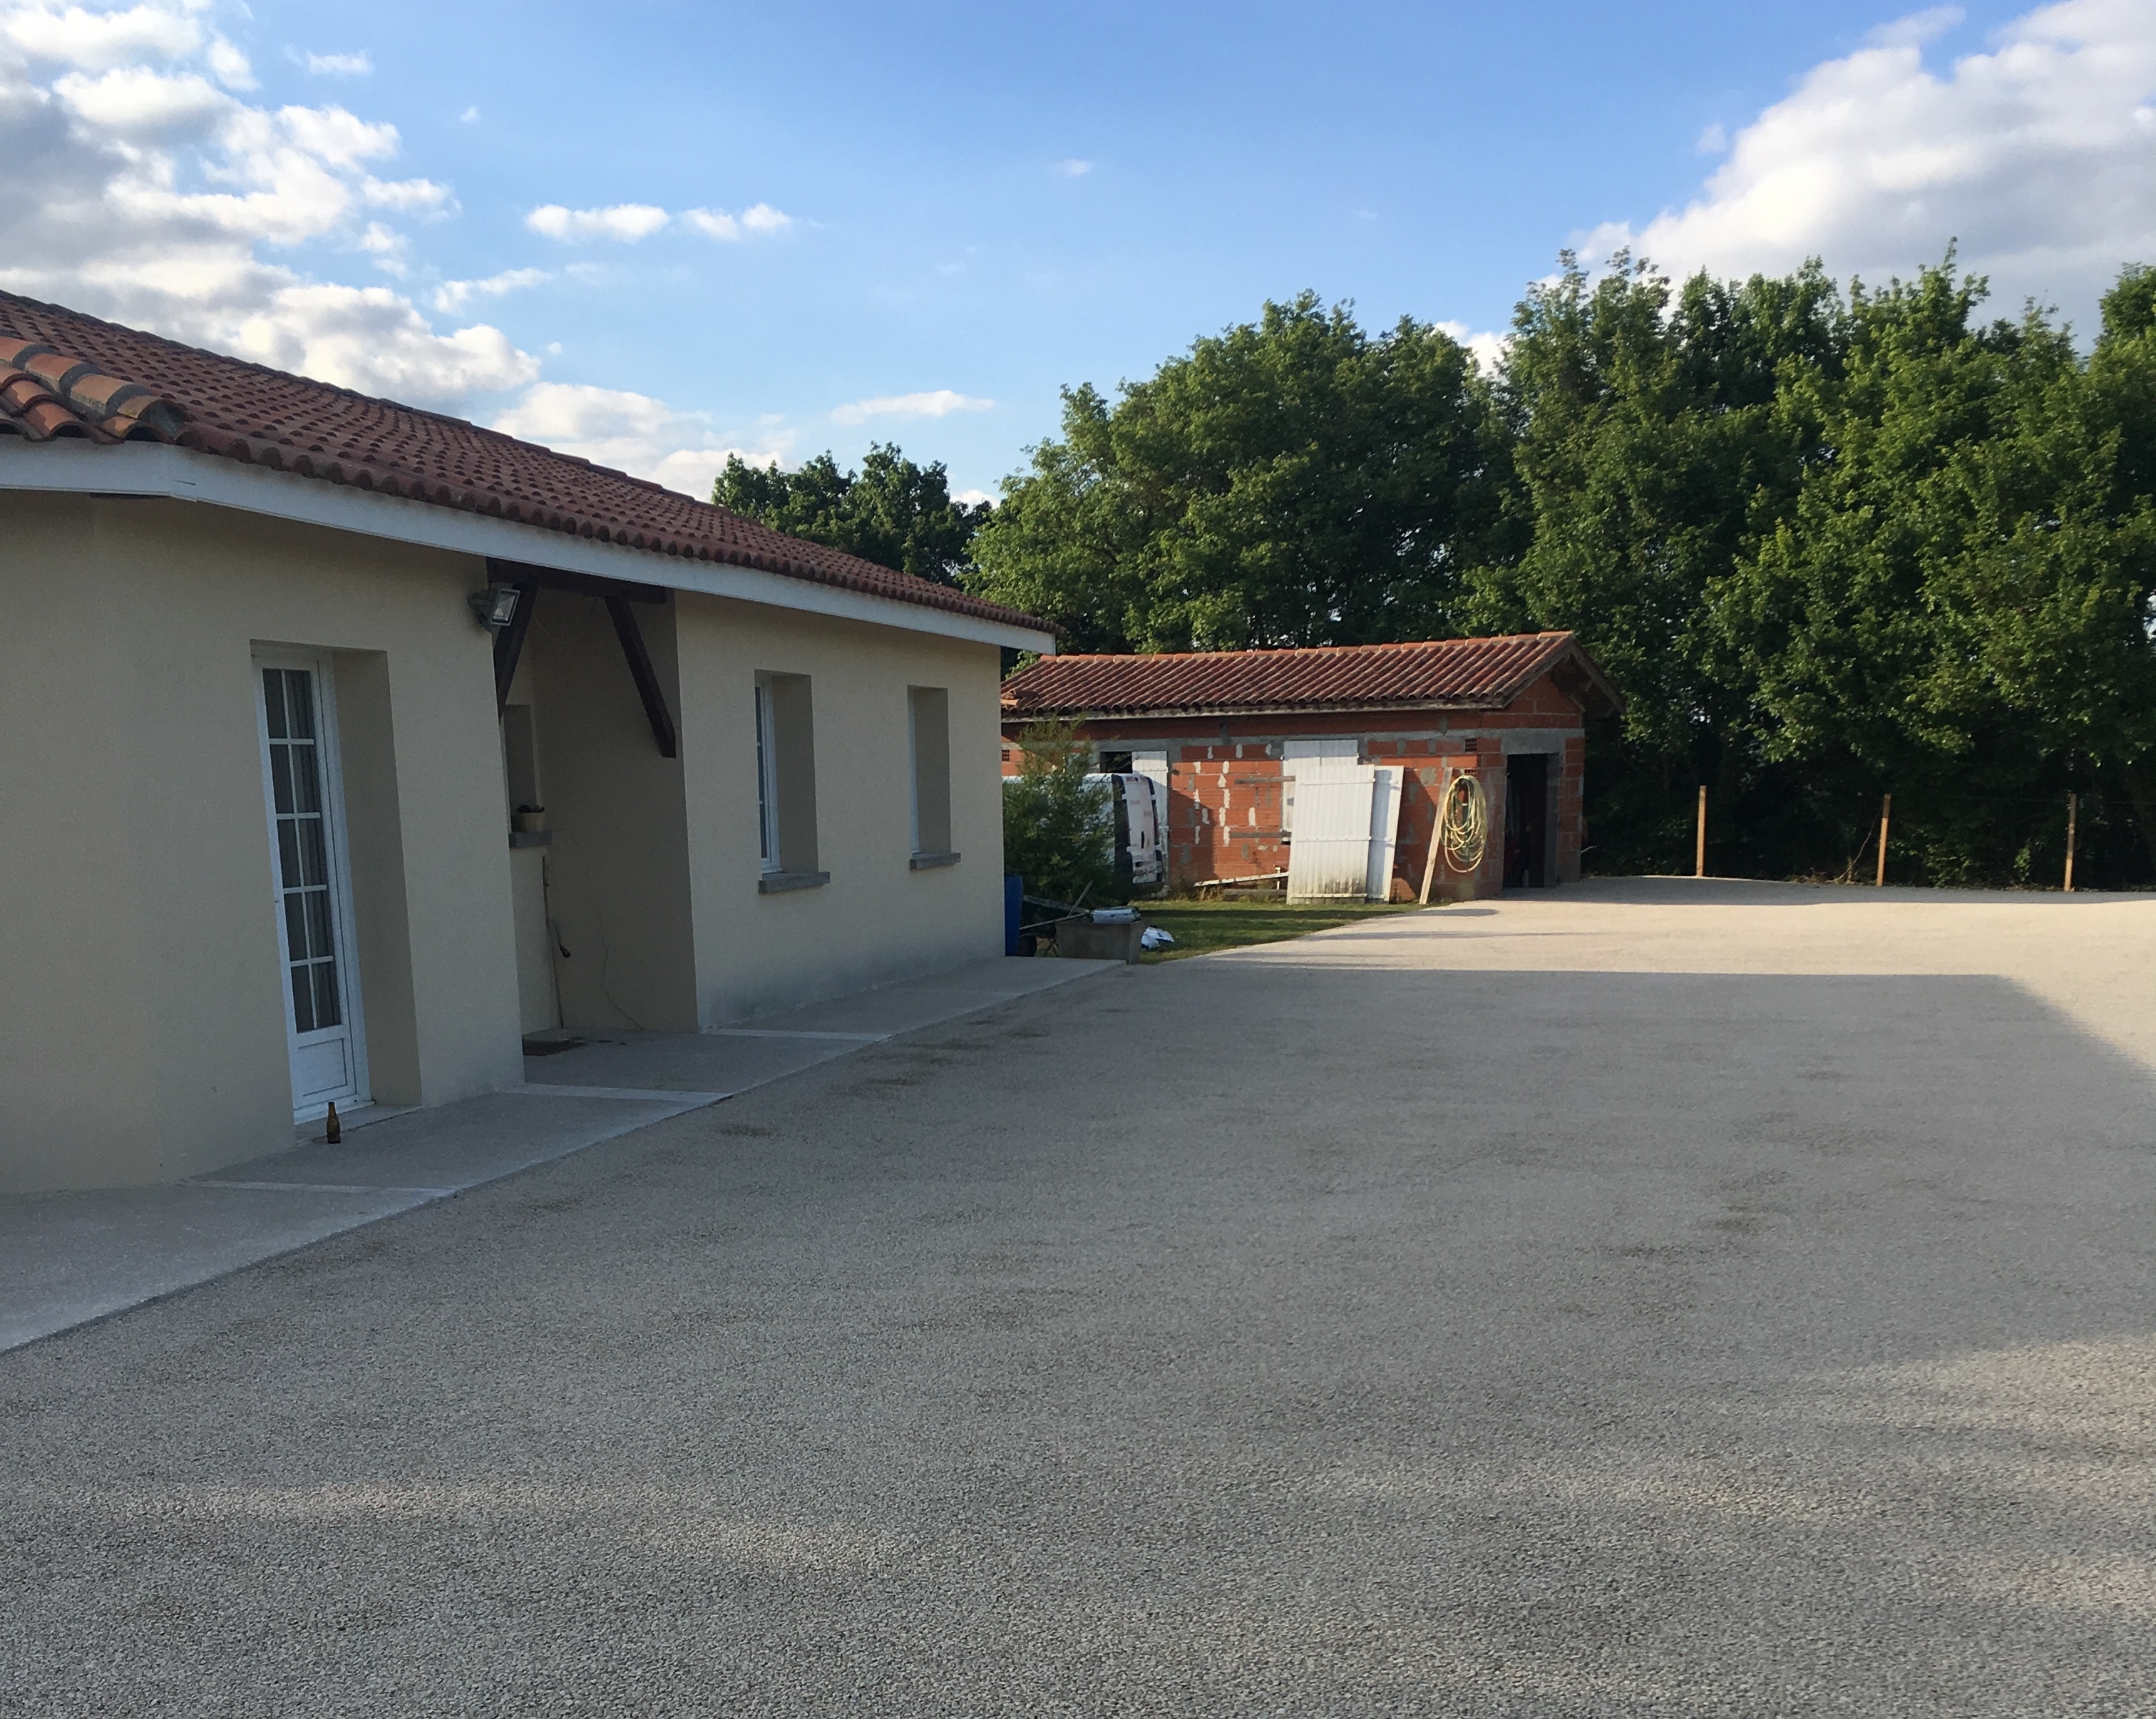 Conception Cour en Gravistar - Entreprise Salafranque - Lot-et-Garonne cre le 20/11/2018